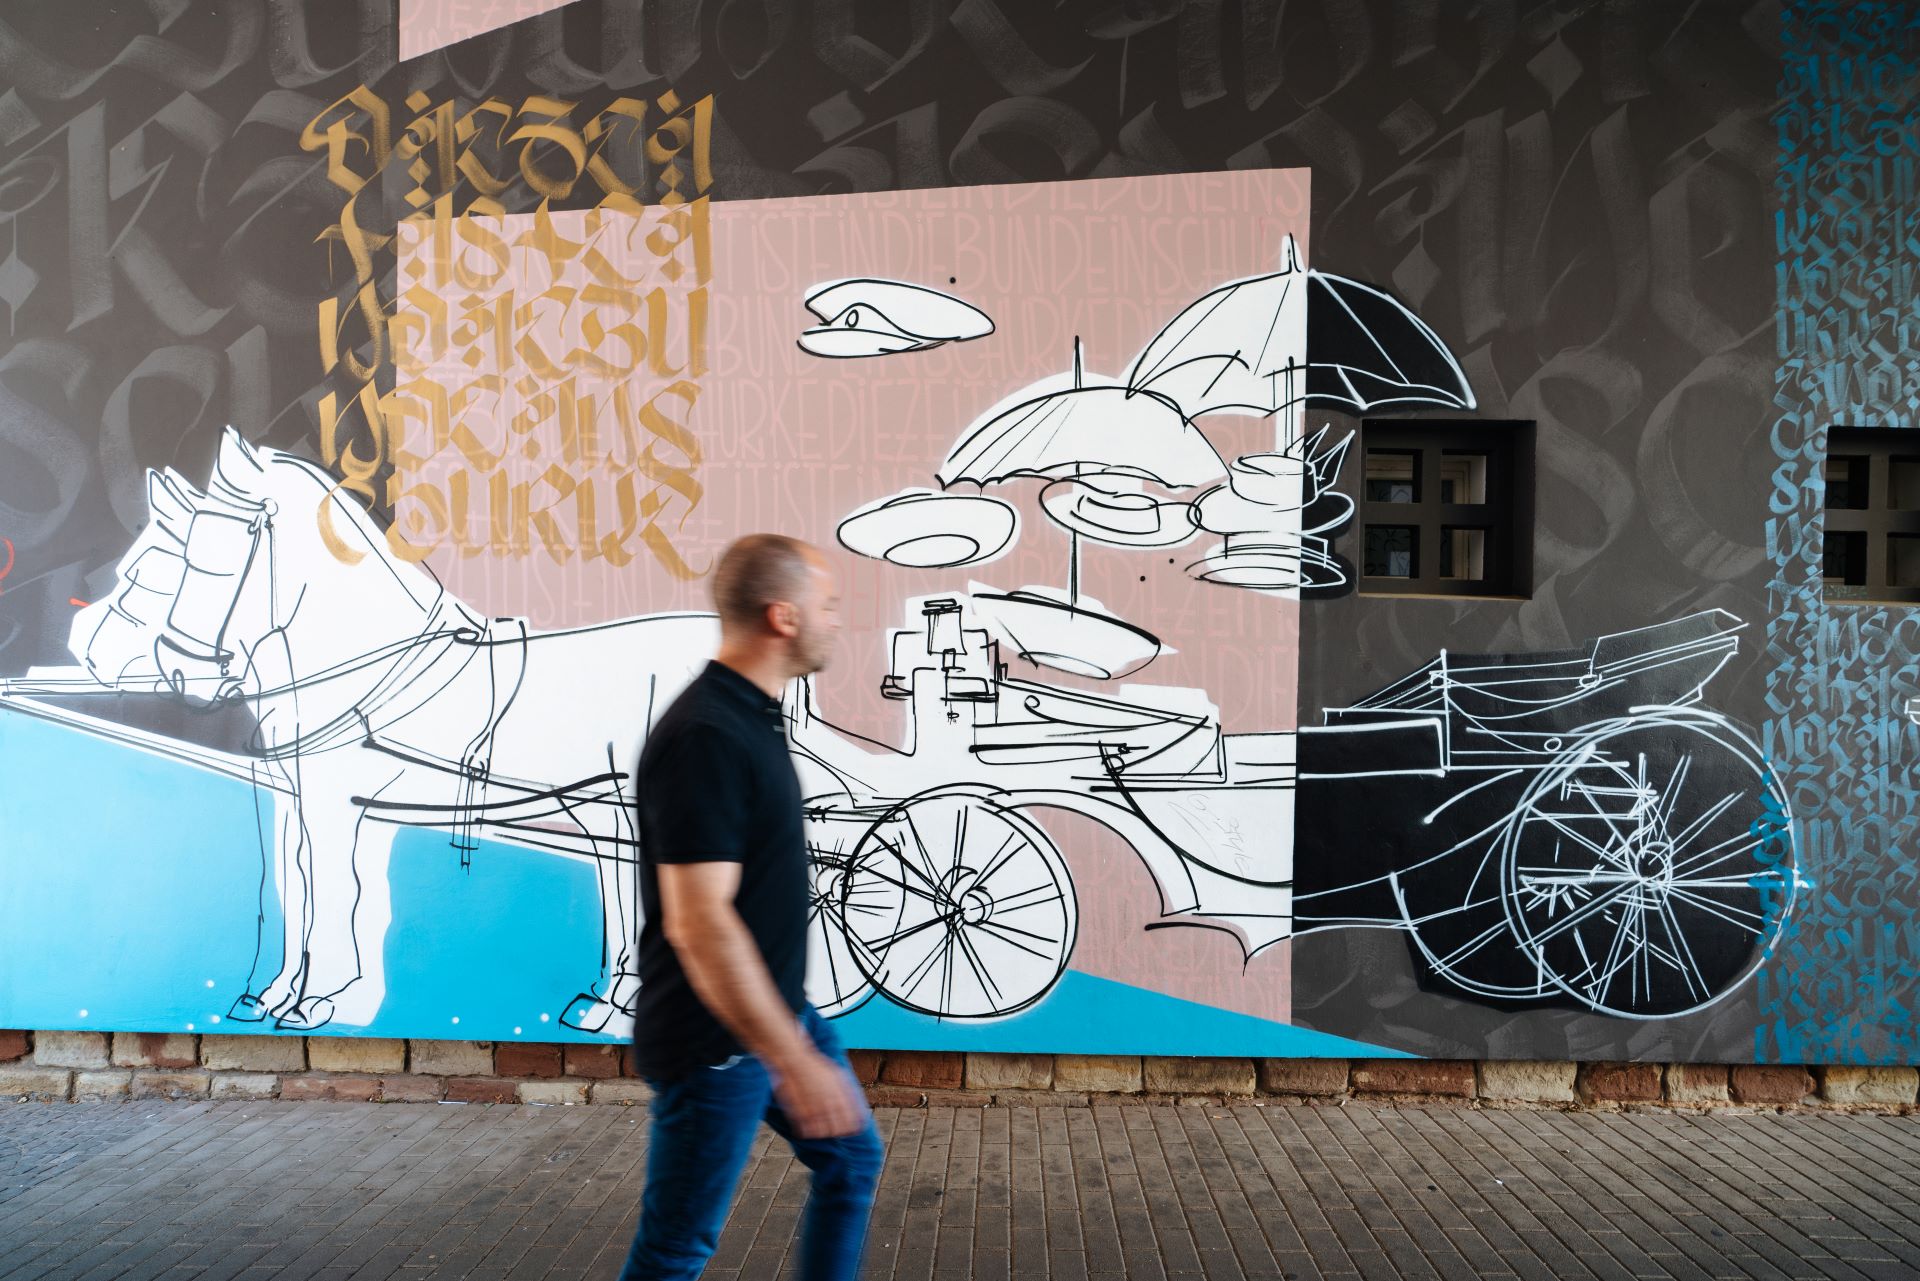 Reso geht vor einer mit Graffiti bemalten Wand. Das Kunstwerk stellt zwei Pferde dar, die eine Kutsche ziehen.